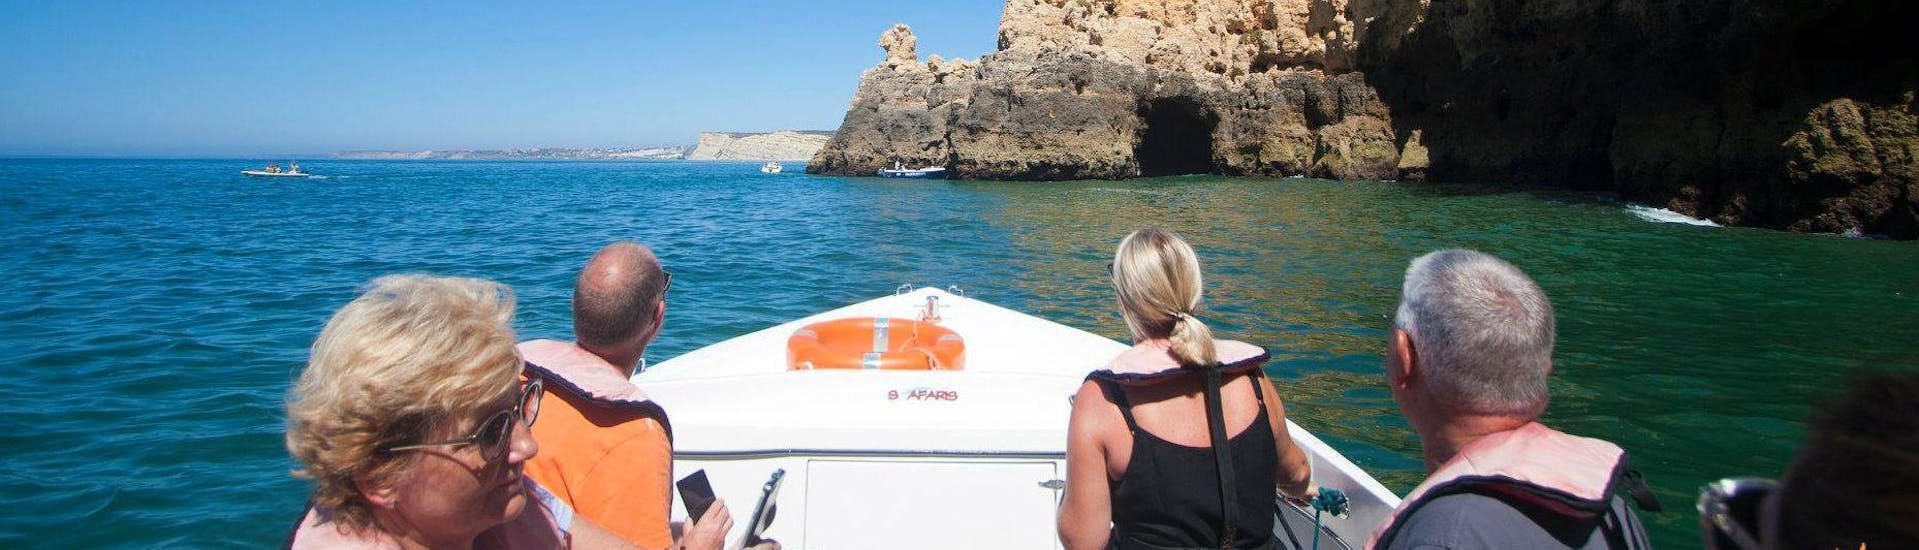 Tijdens de boottocht naar Ponta da Piedade vanuit Lagos met Seafaris Algarve genieten de passagiers van het uitzicht op de unieke rotsformaties.